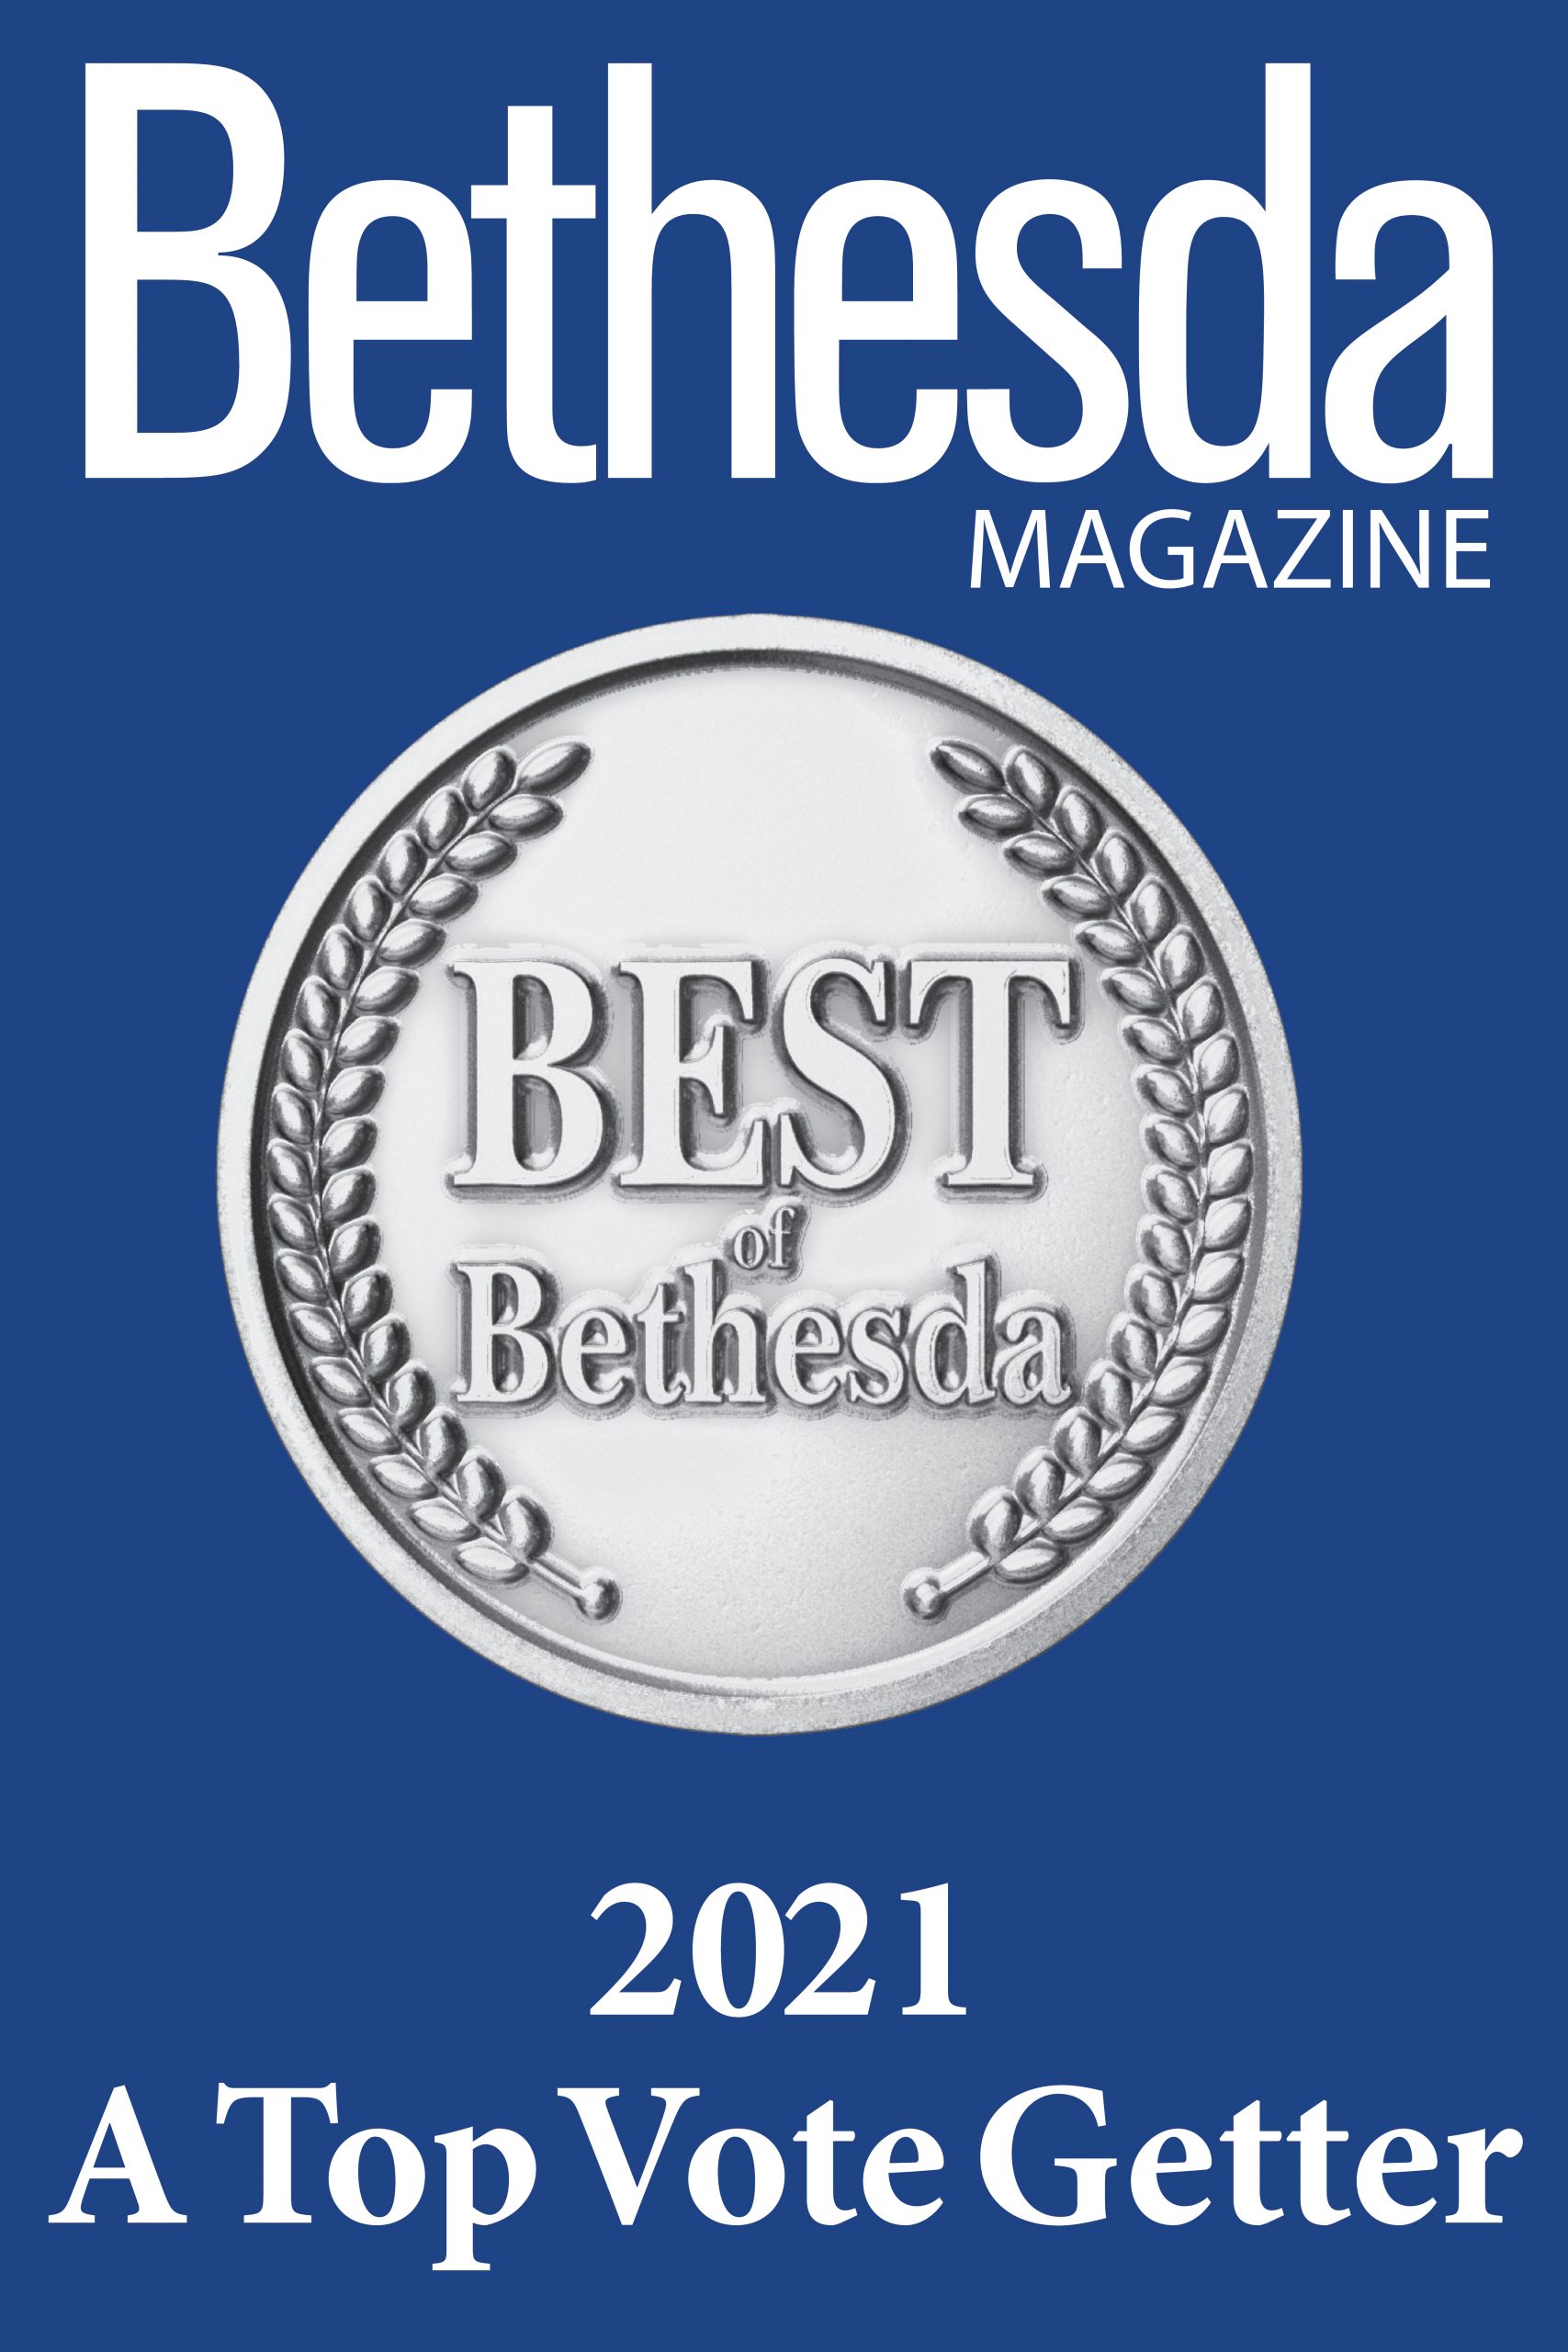 Bethesda Magazine 2021 A Top Vote Getter